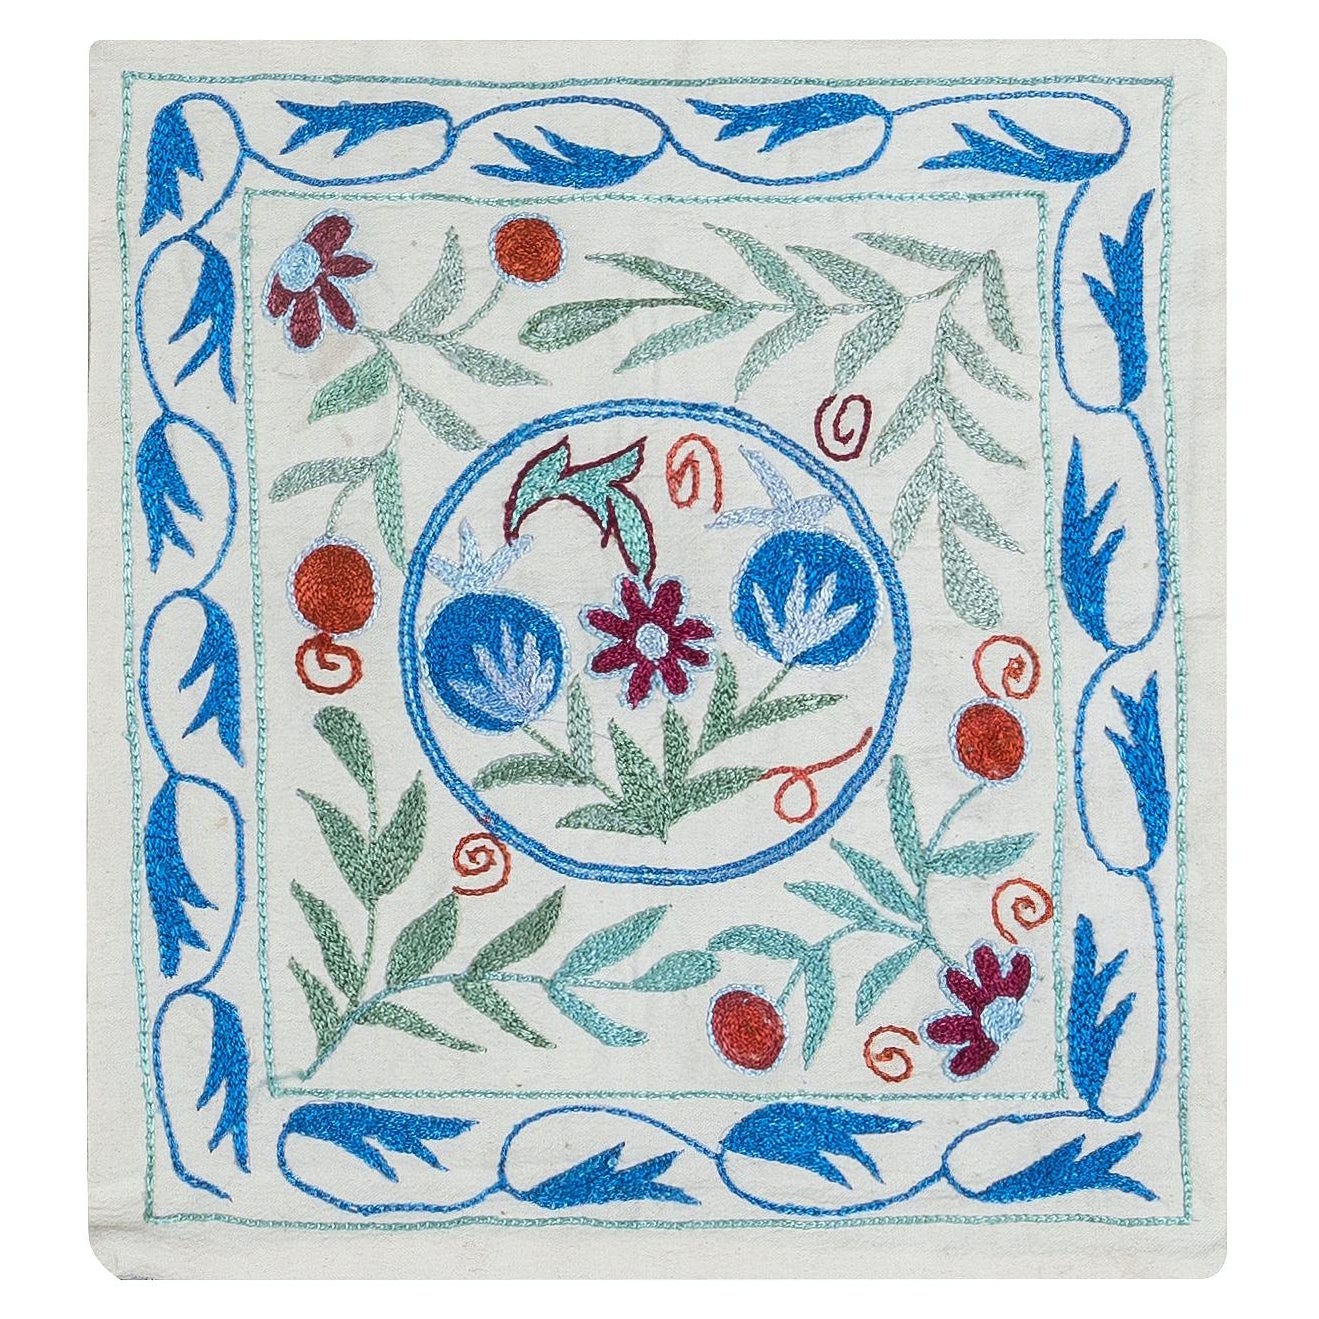 Silk Hand Embroidery Suzani Throw Pillow Cover, Uzbek Linen Toss Pillow